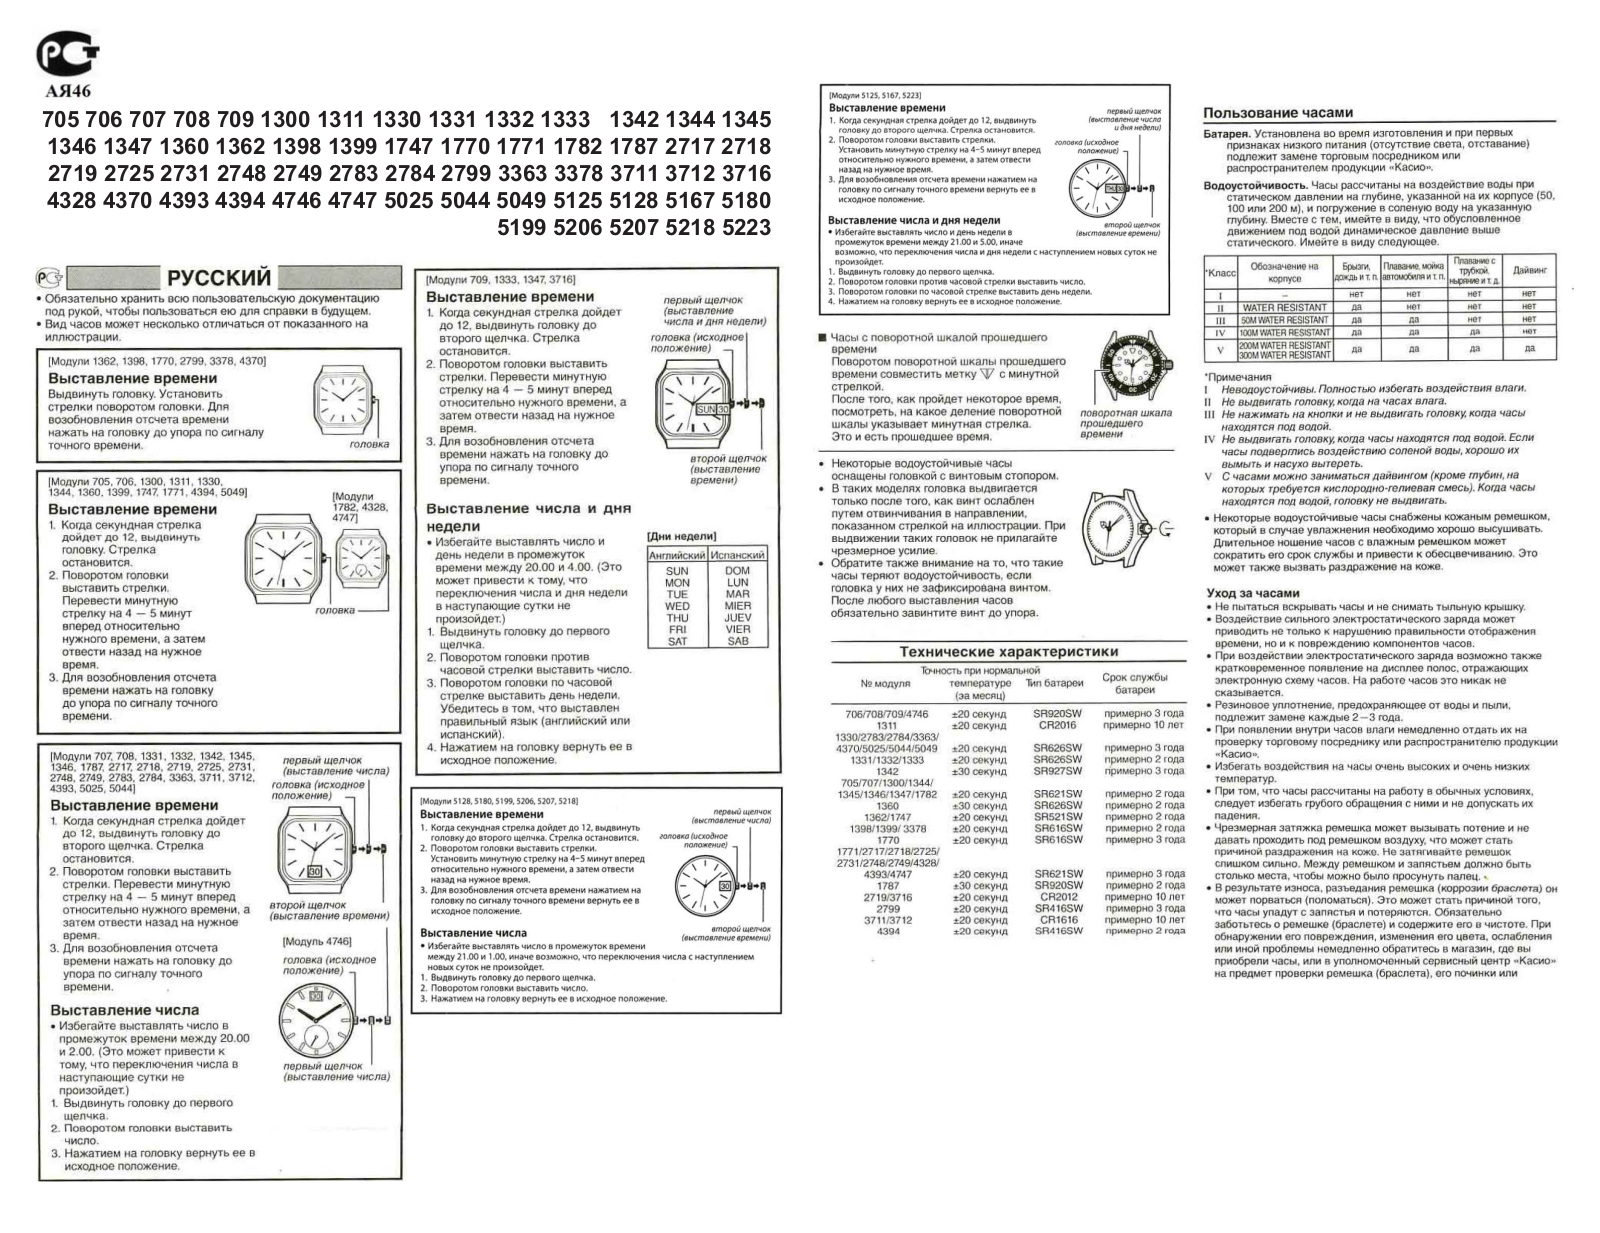 Casio EF-130D-1A2 User Manual